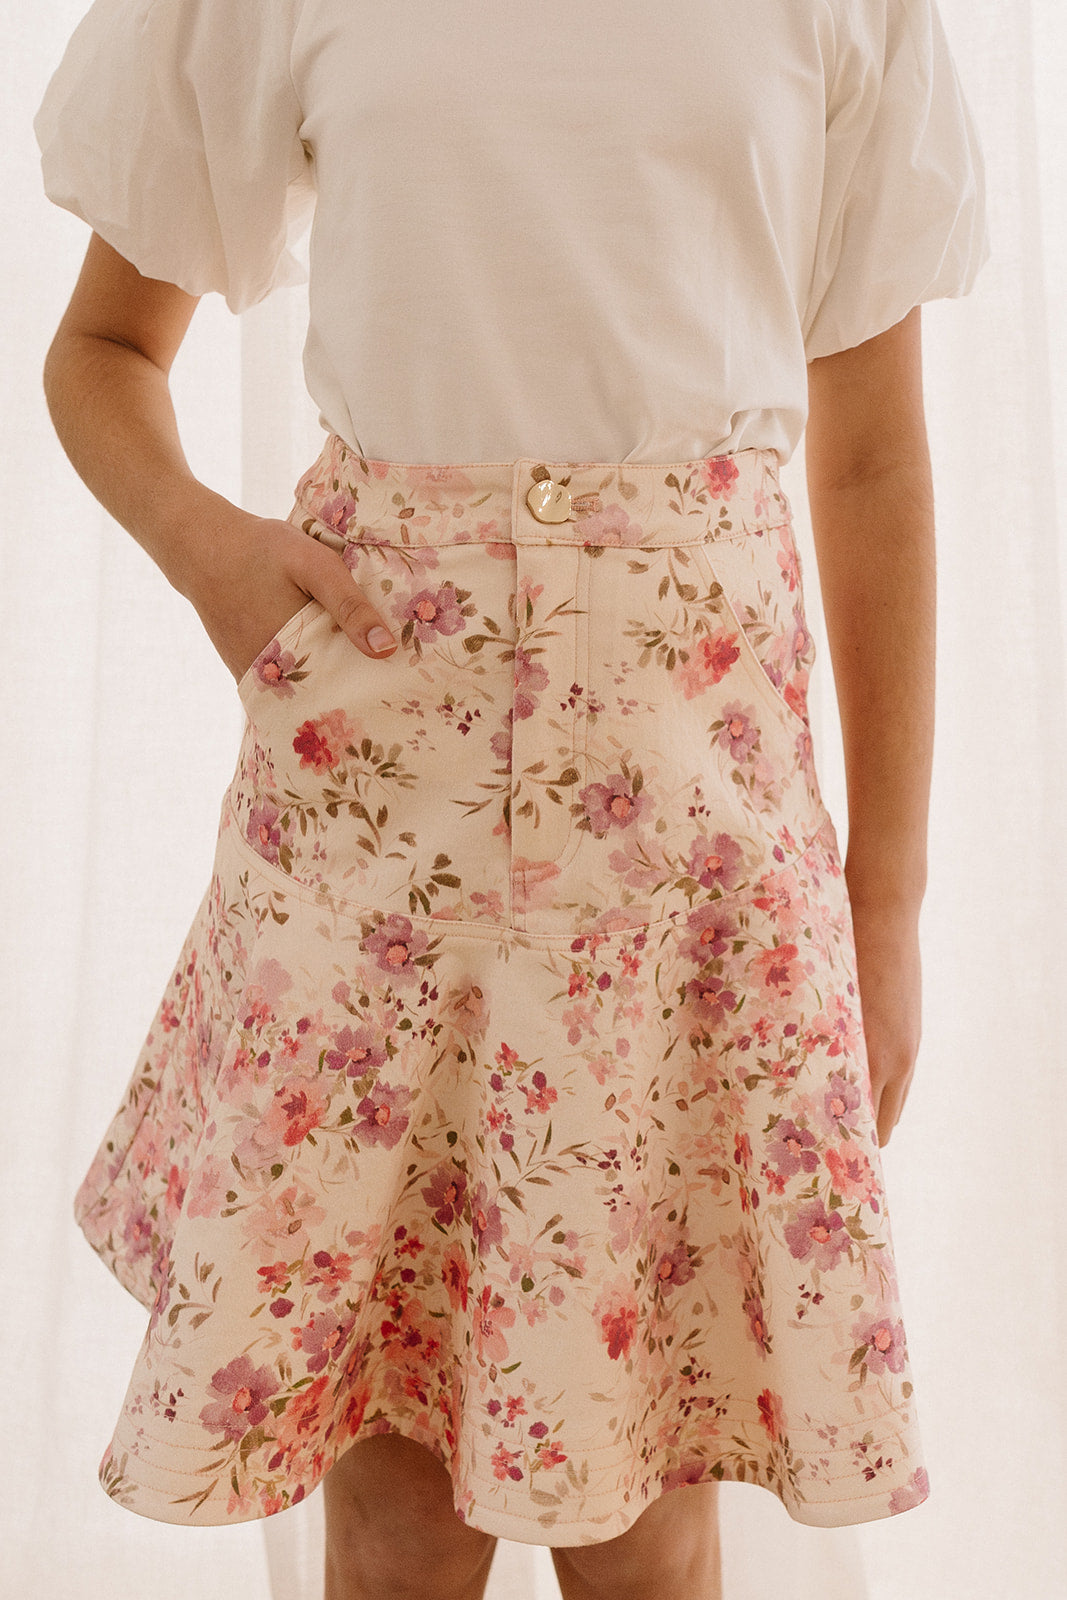 Lauren Petite Ralph Lauren Denim Skirt - ShopStyle